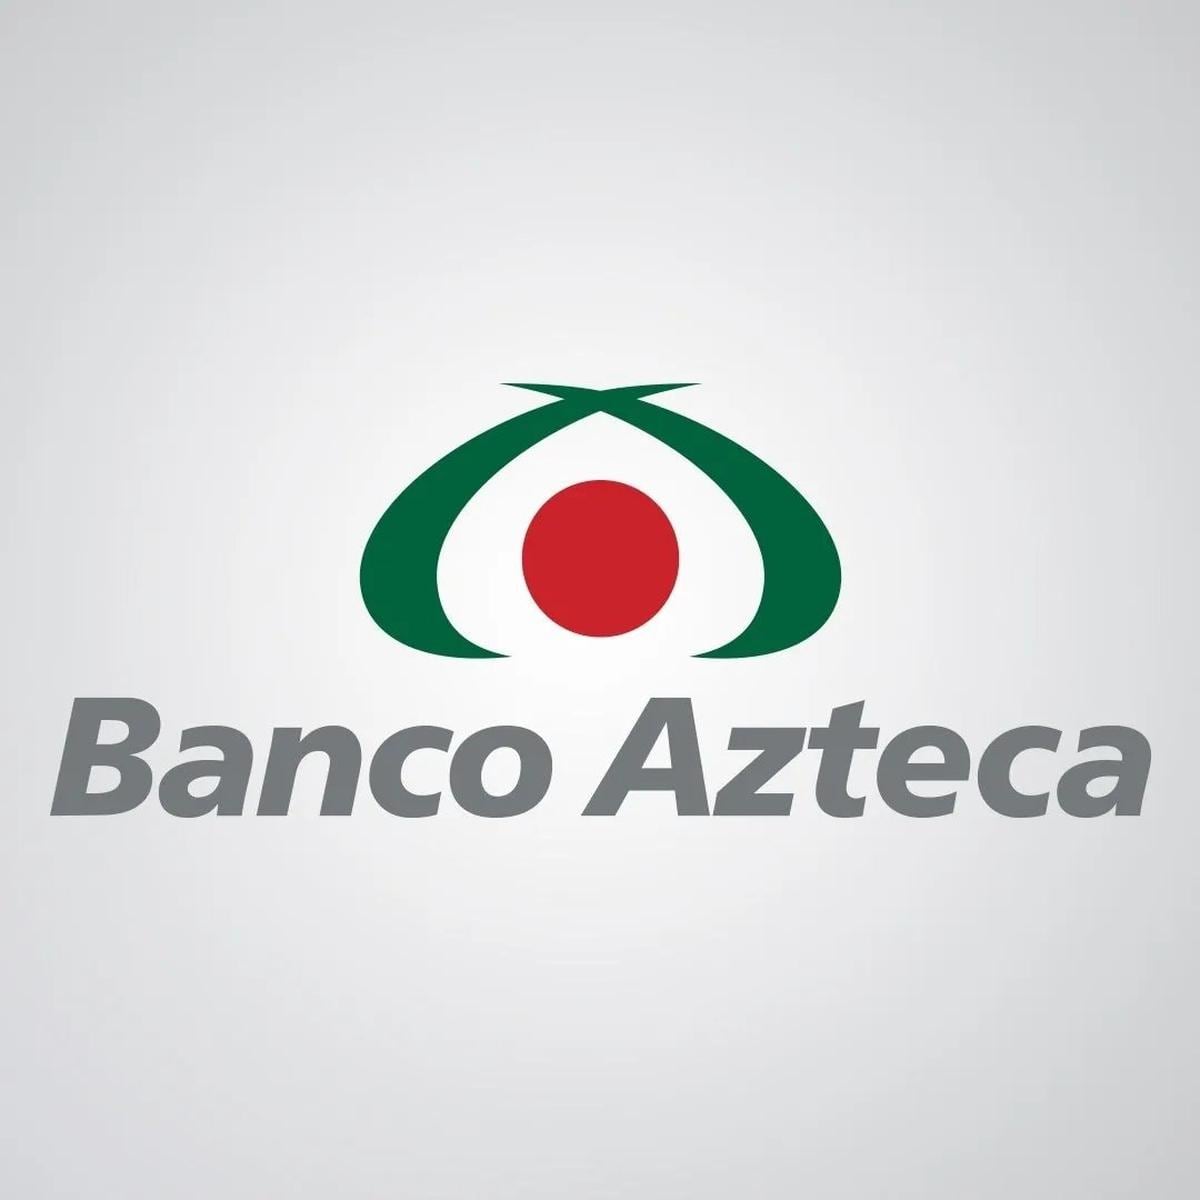 Banco Azteca | Sin comisiones por retiros en cajeros automáticos propios y de Grupo Elektra. Fuente: Instagram @bancoazteca